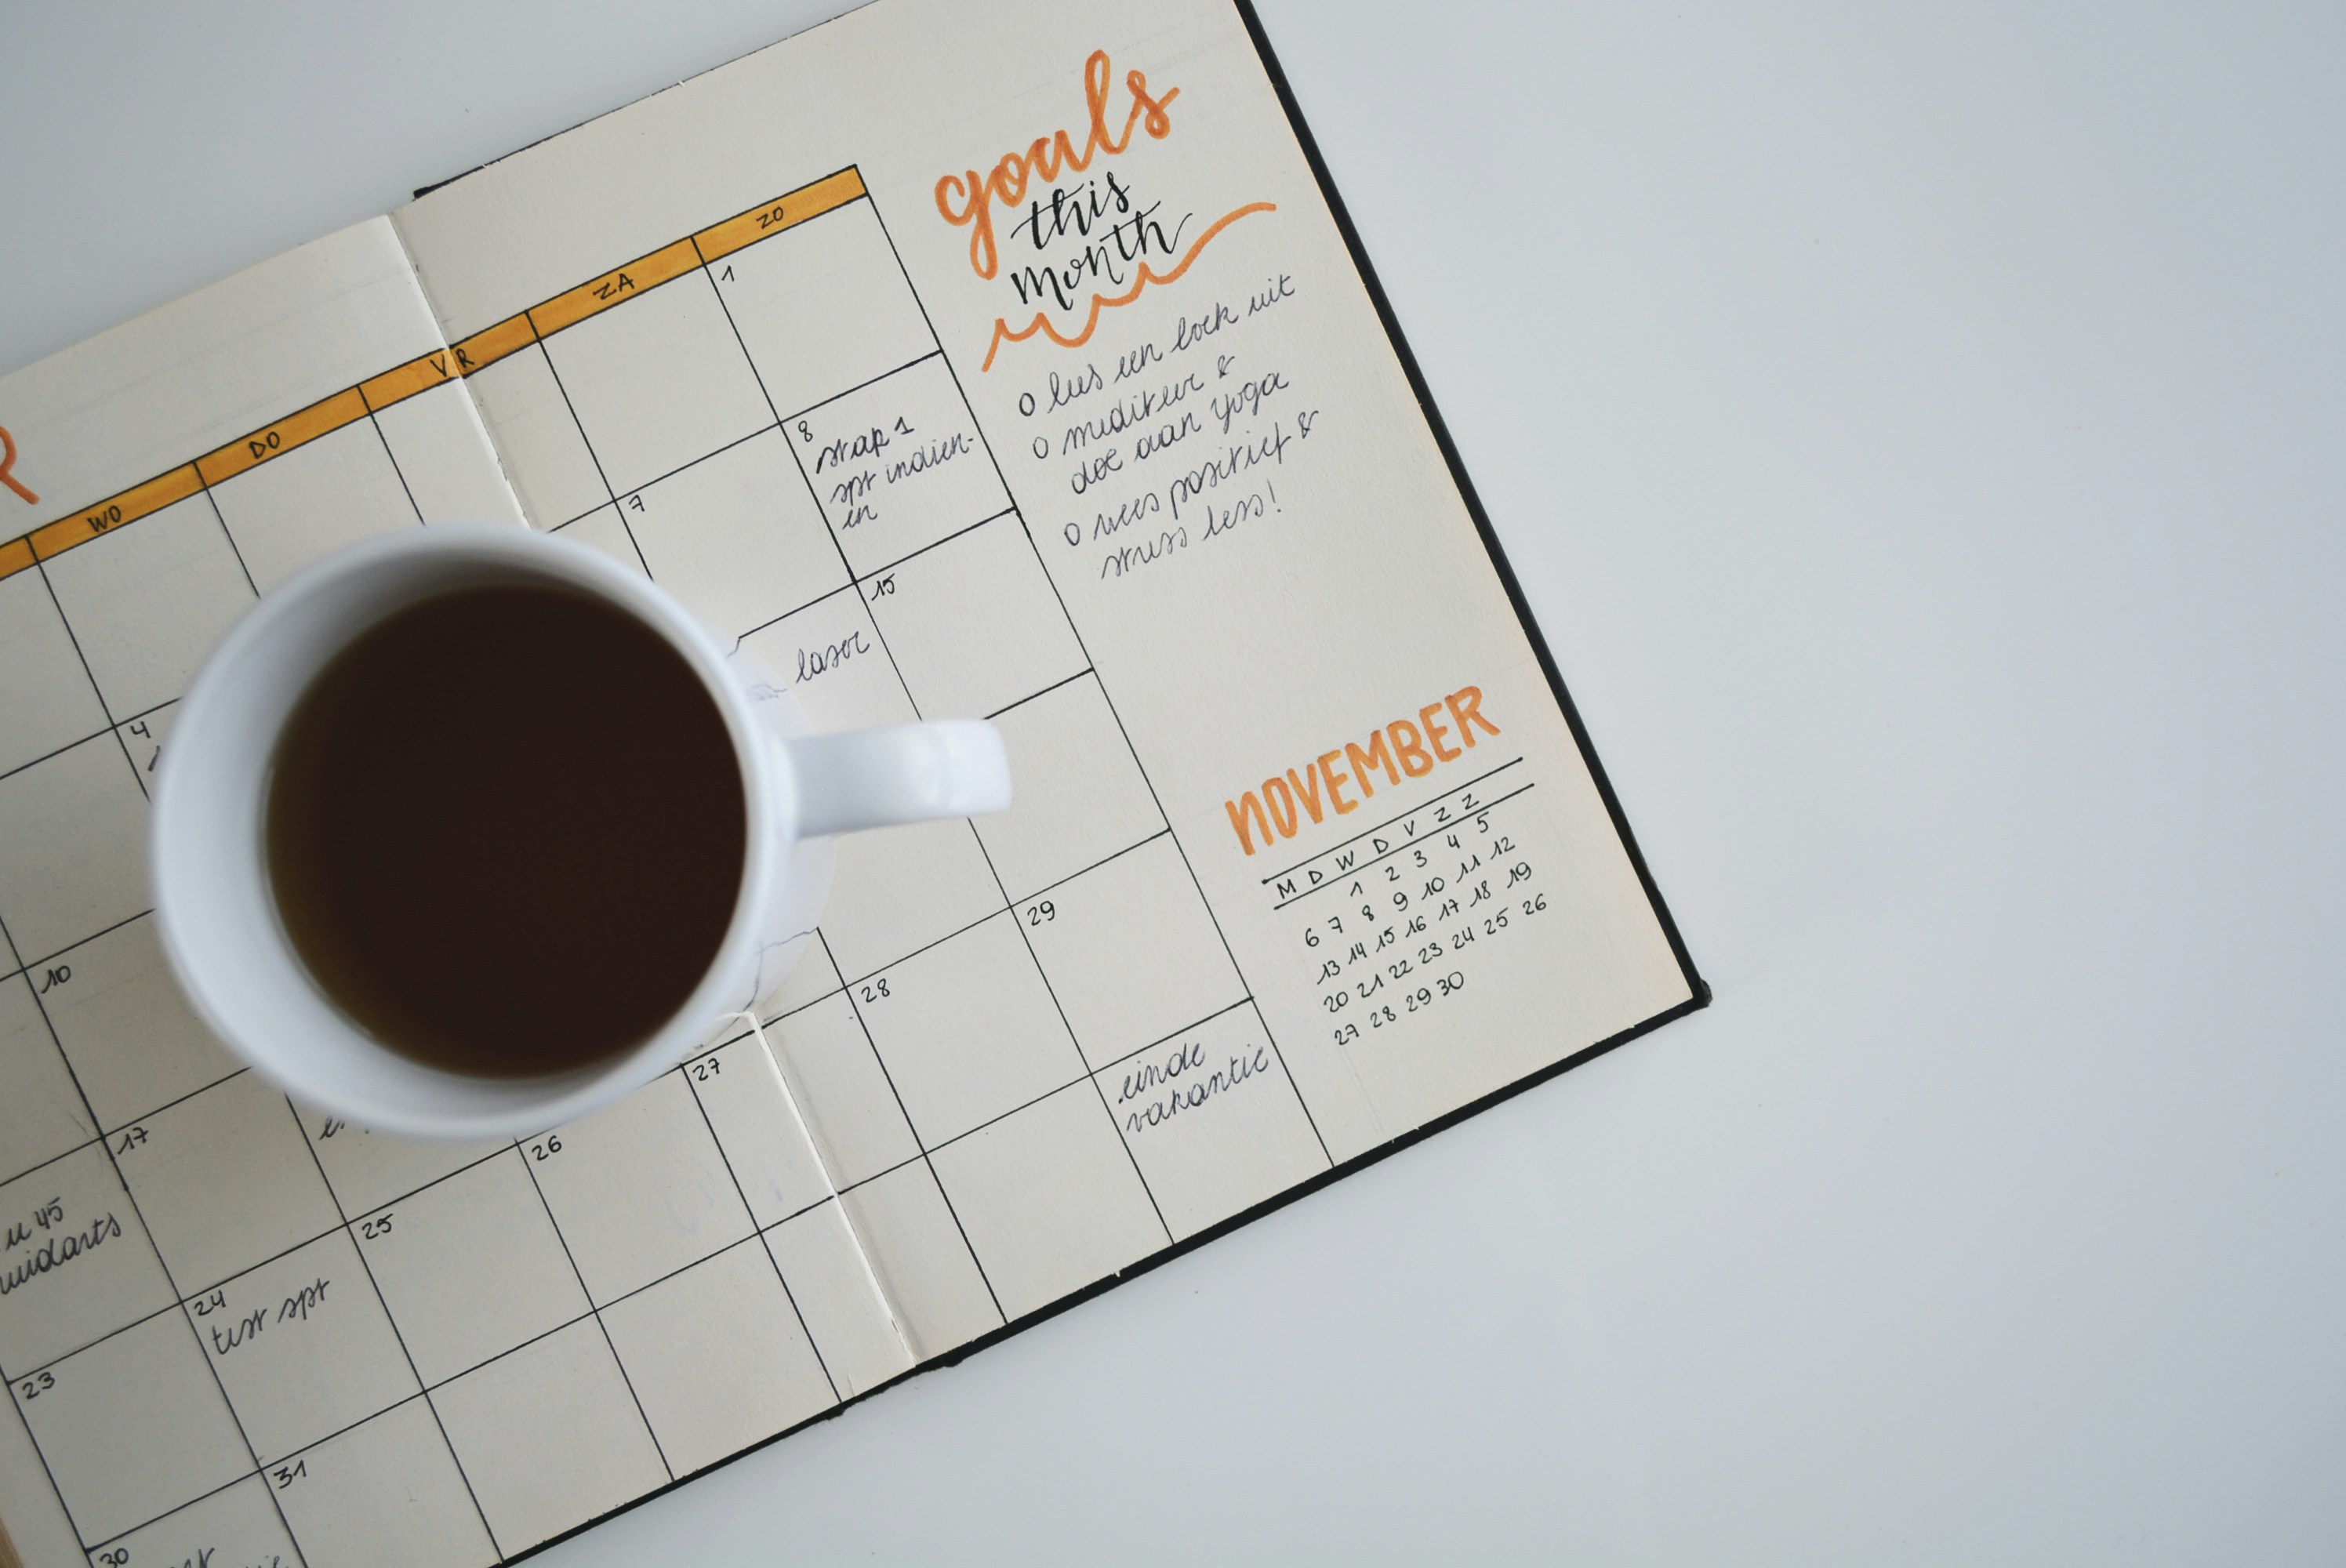 Decorative Image of a calendar and a coffee mug